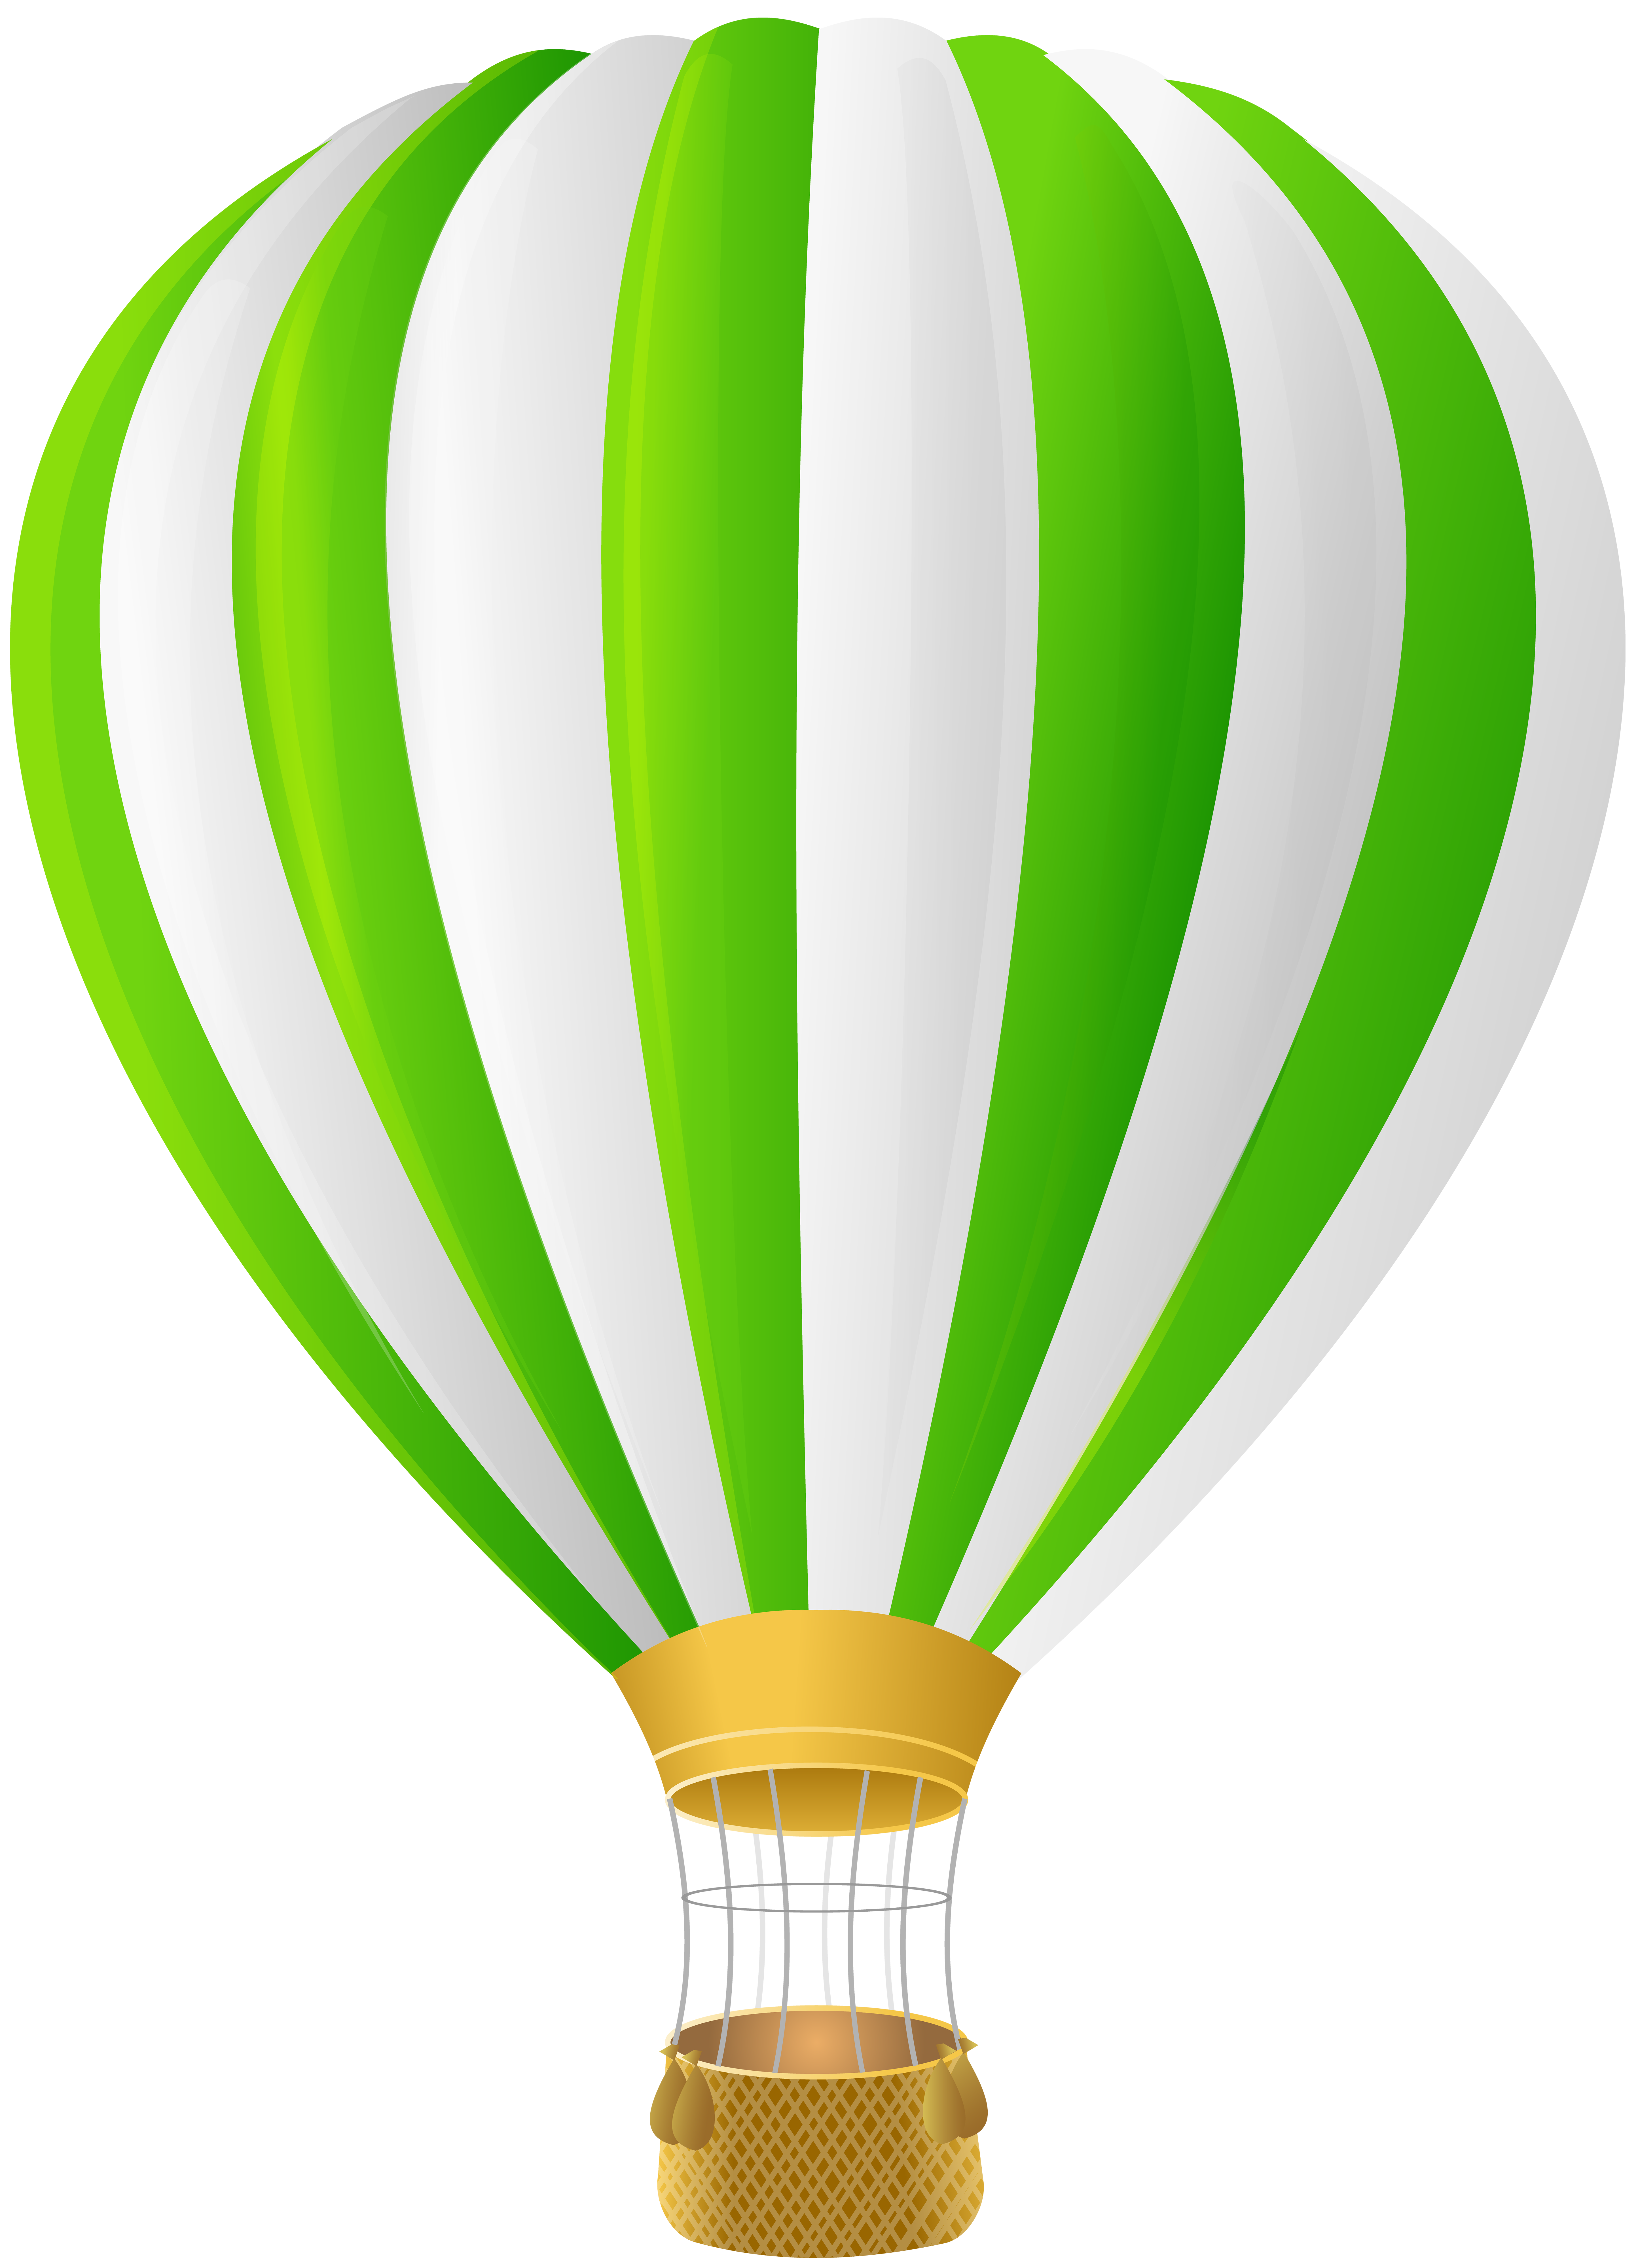 Green Hot Air Balloon Transparent PNG Clip Art